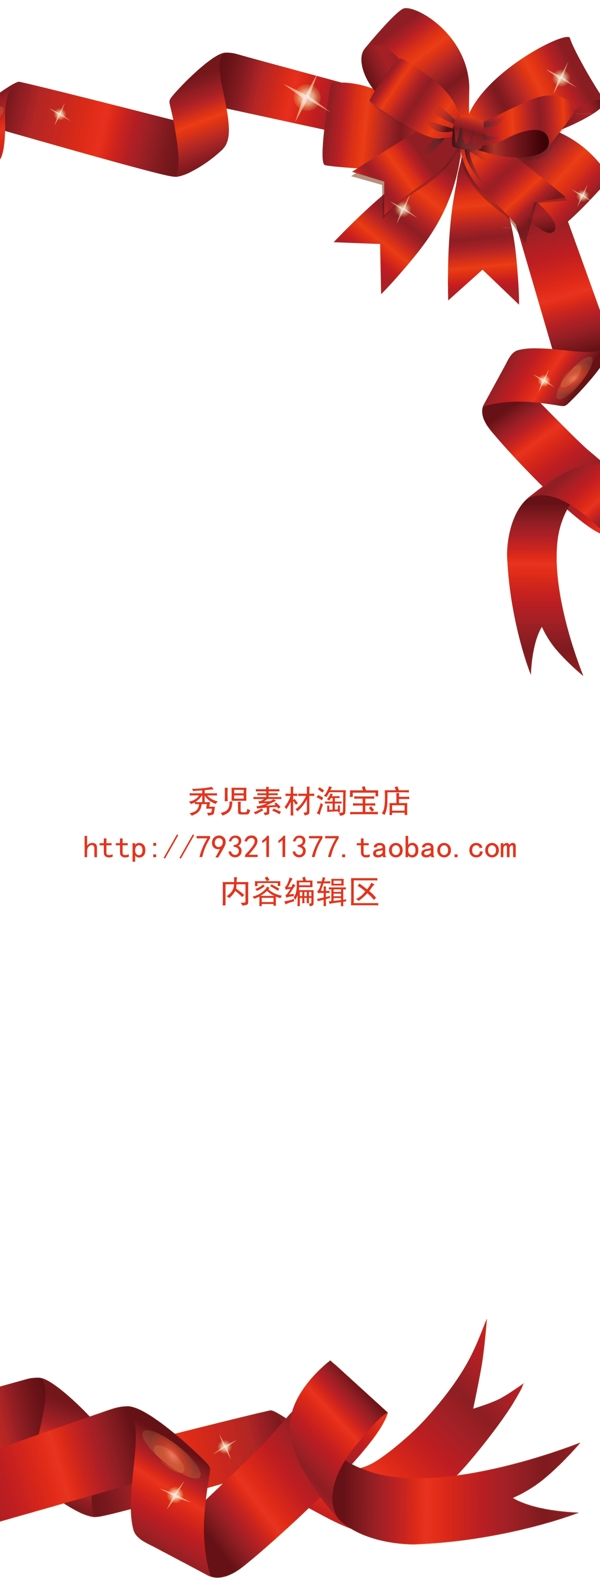 红色中国结展架模板设计海报素材画面